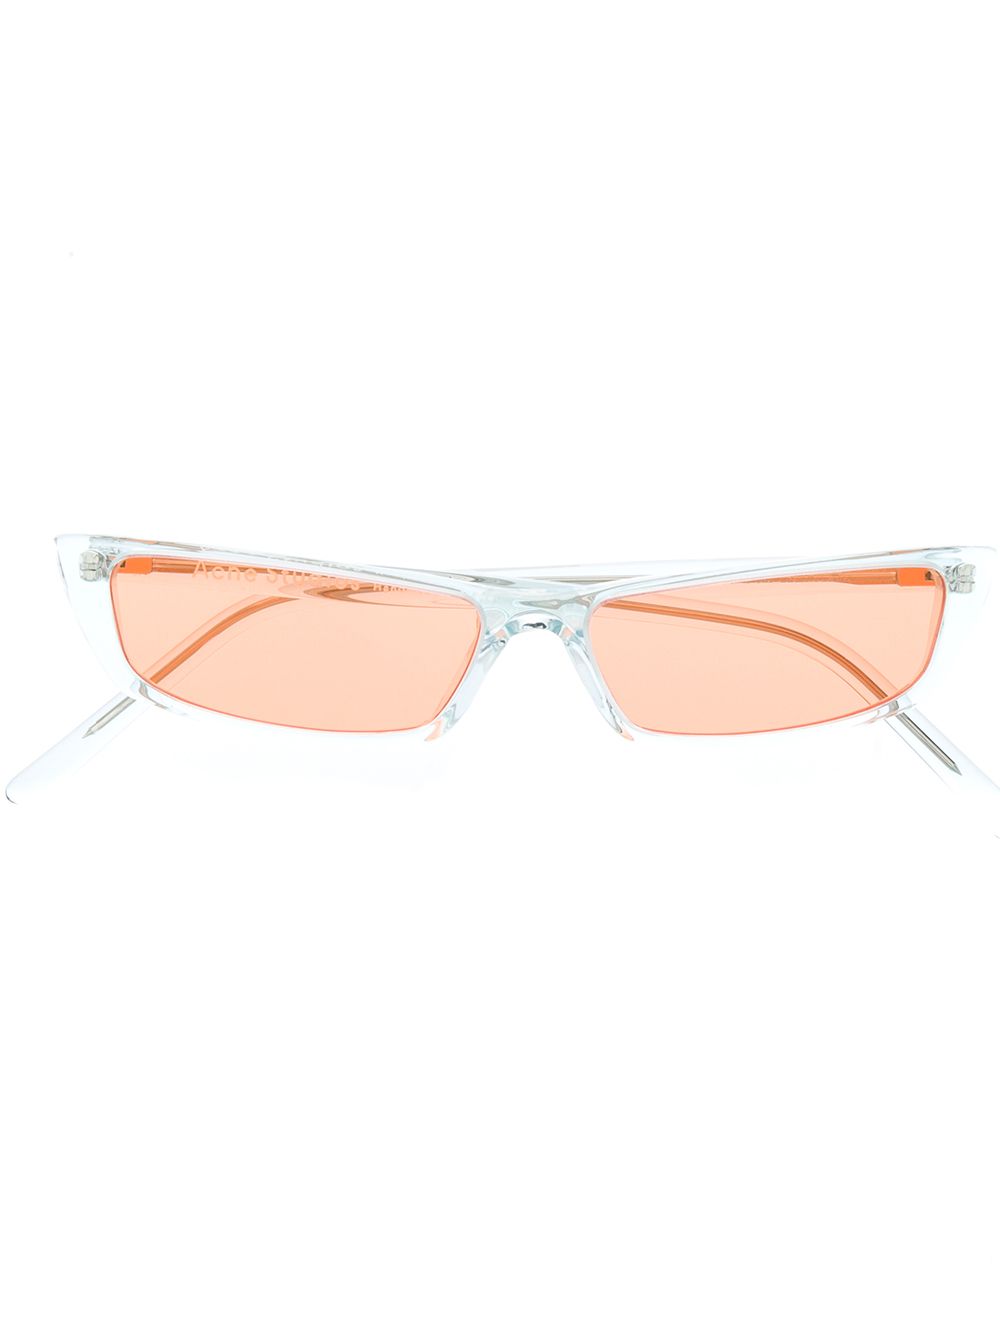 фото Acne studios солнцезащитные очки с оранжевыми линзами